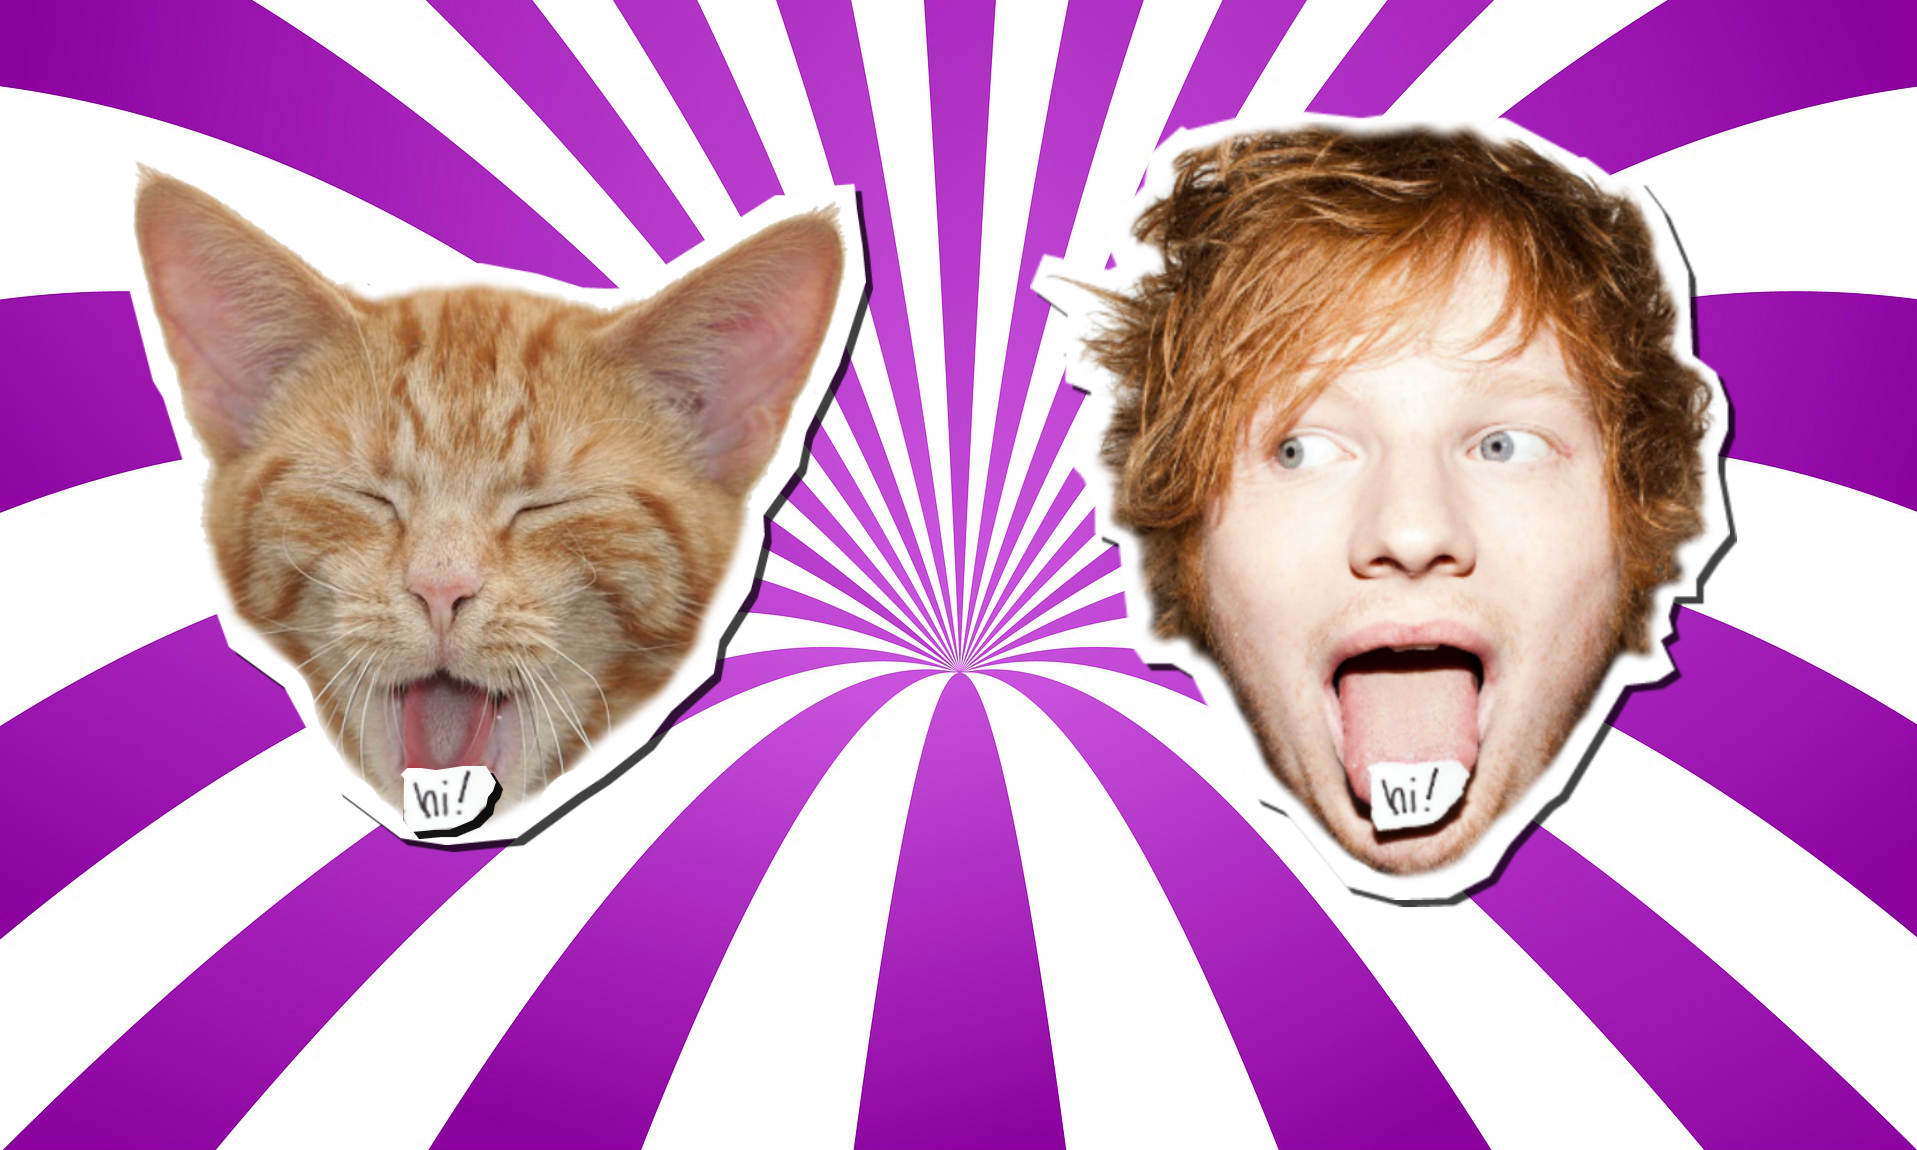 A cat vs Ed Sheeran